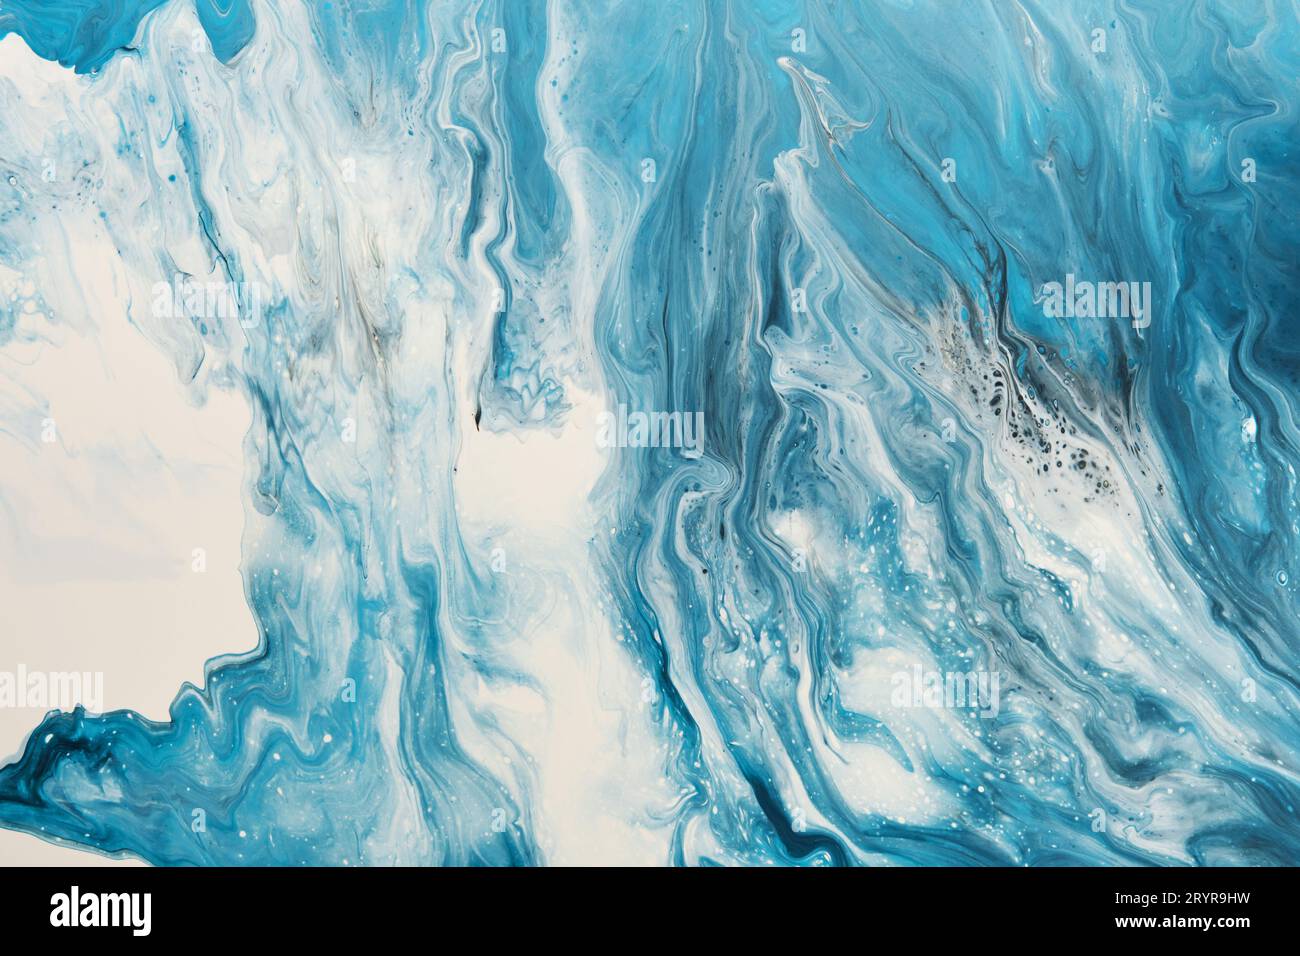 Fluide Art. Flüssige weiße und blaue abstrakte Farbe tropft und welkt. Hintergrund oder Textur mit Marmoreffekt Stockfoto